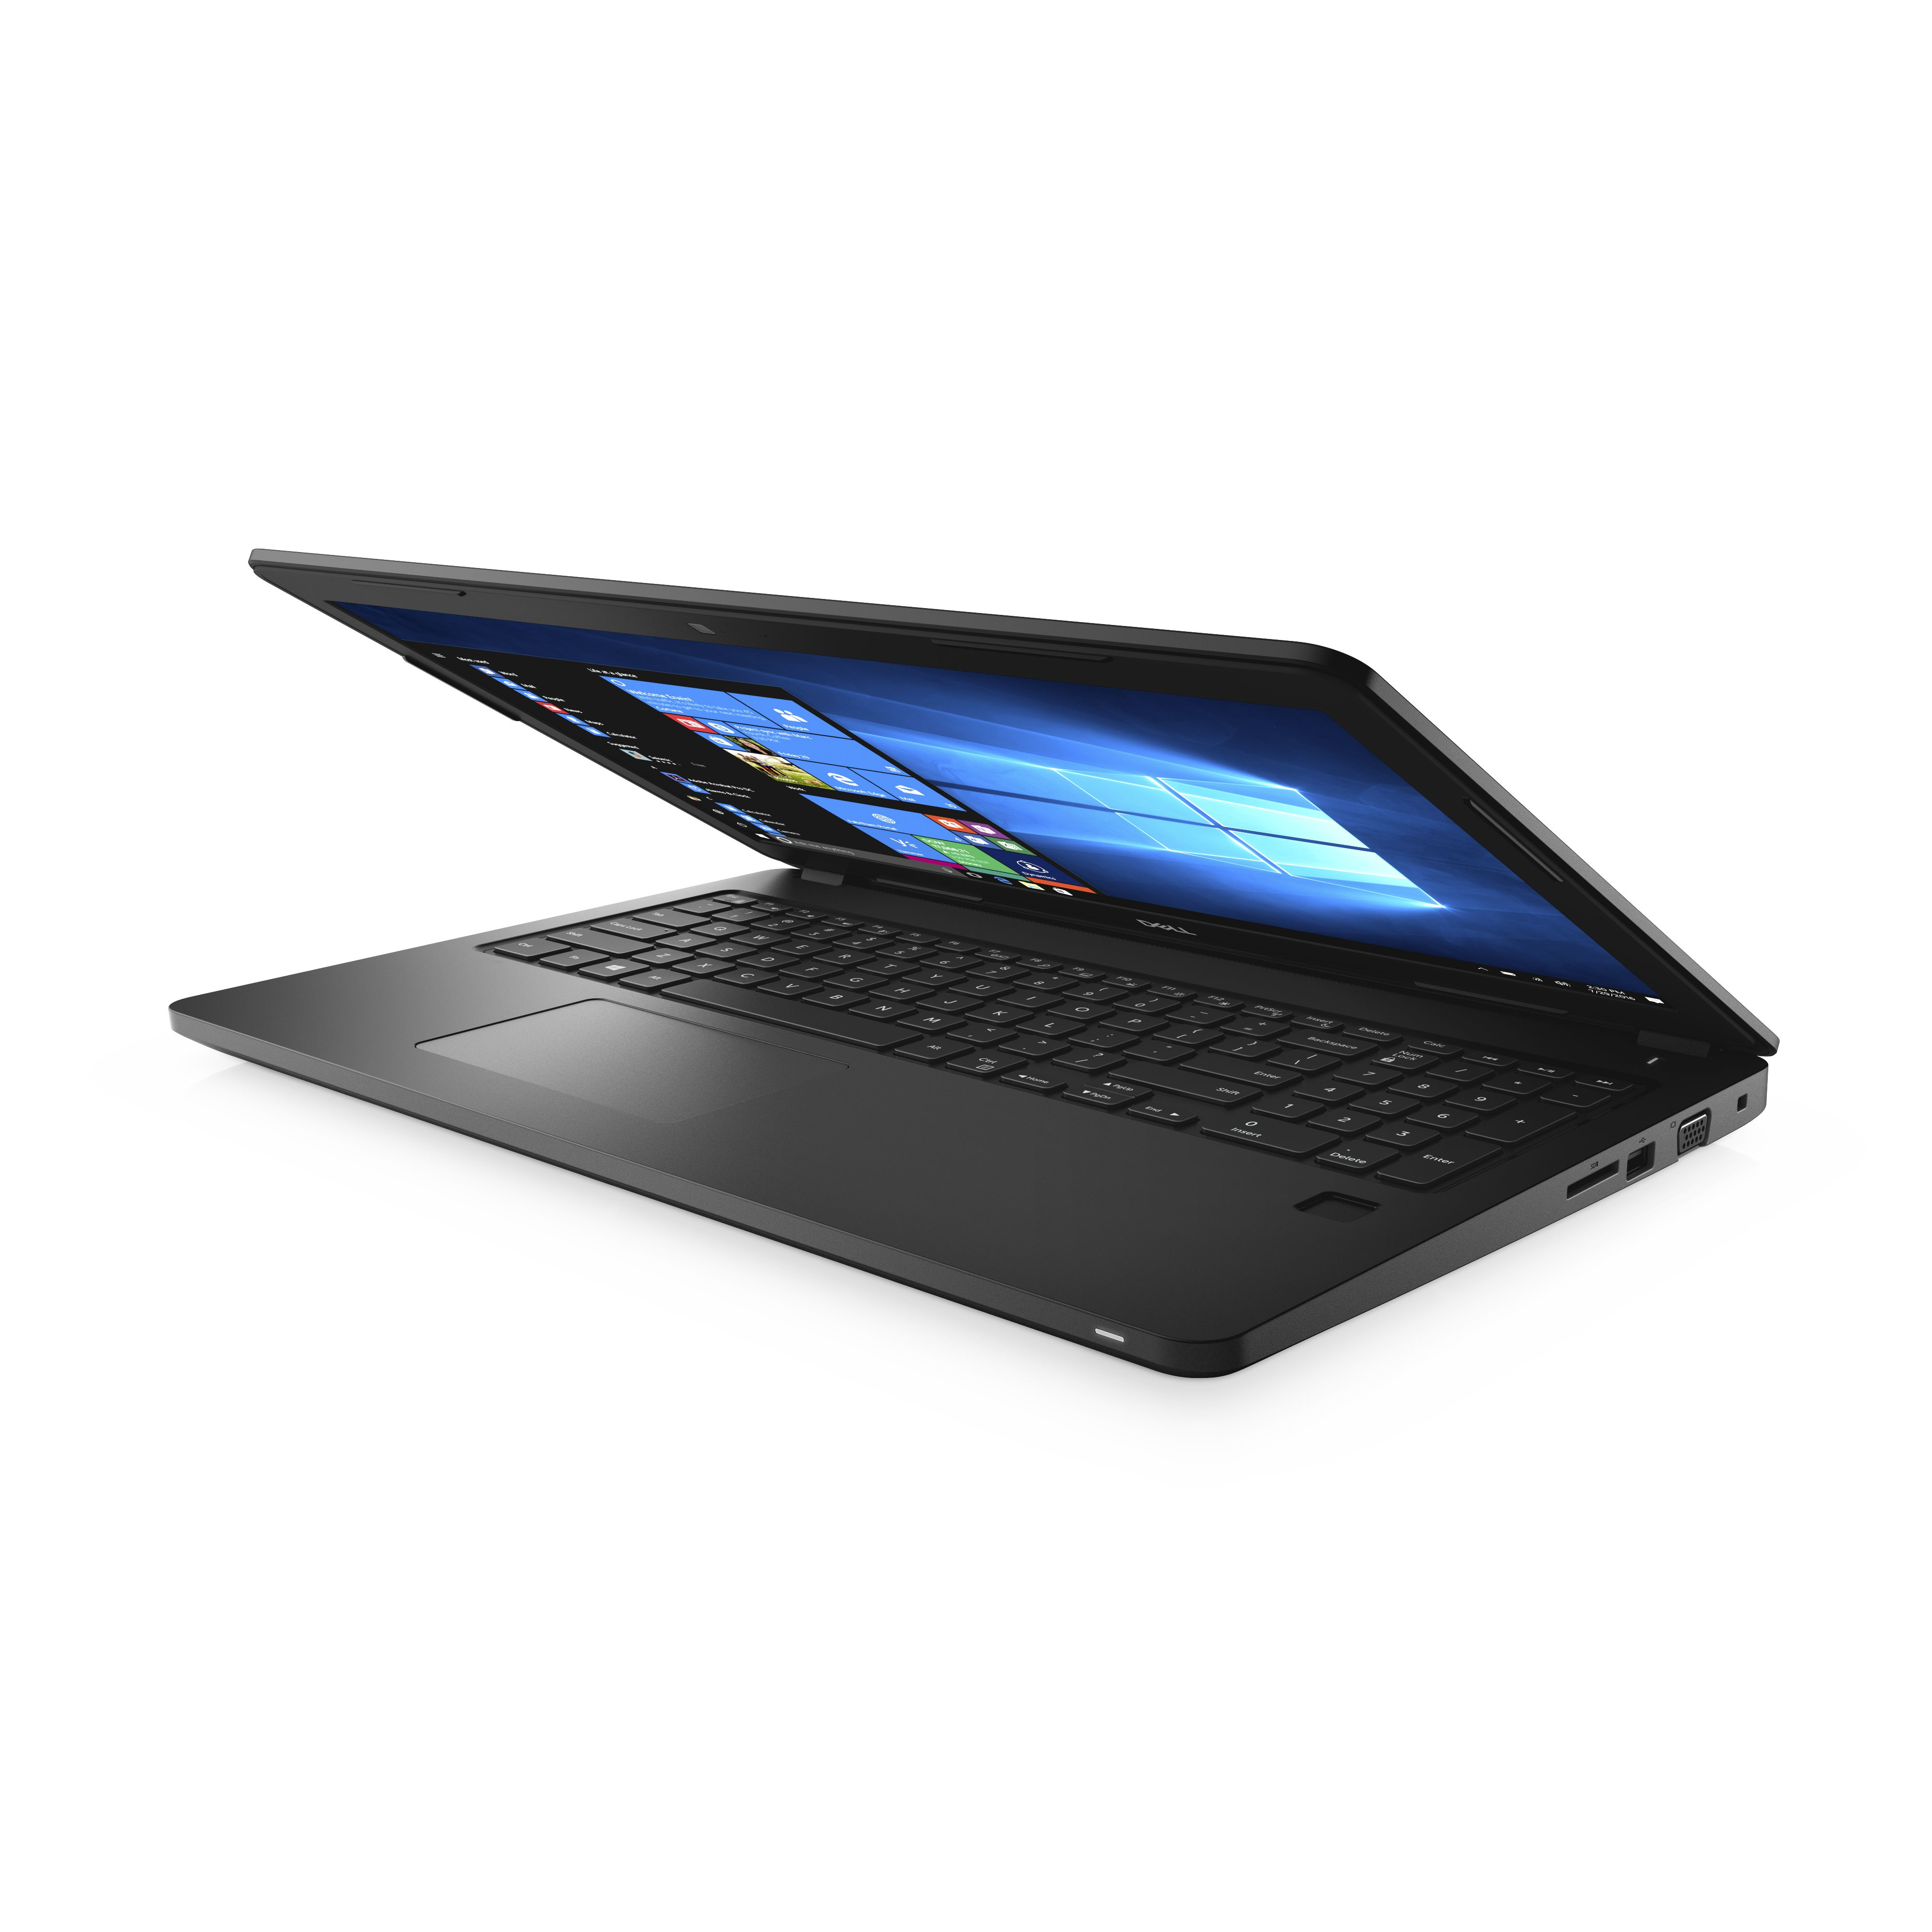 Dell Latitude 3580 250ghz I5 7200u 156 1366 X 768pixels Black Notebook 8083